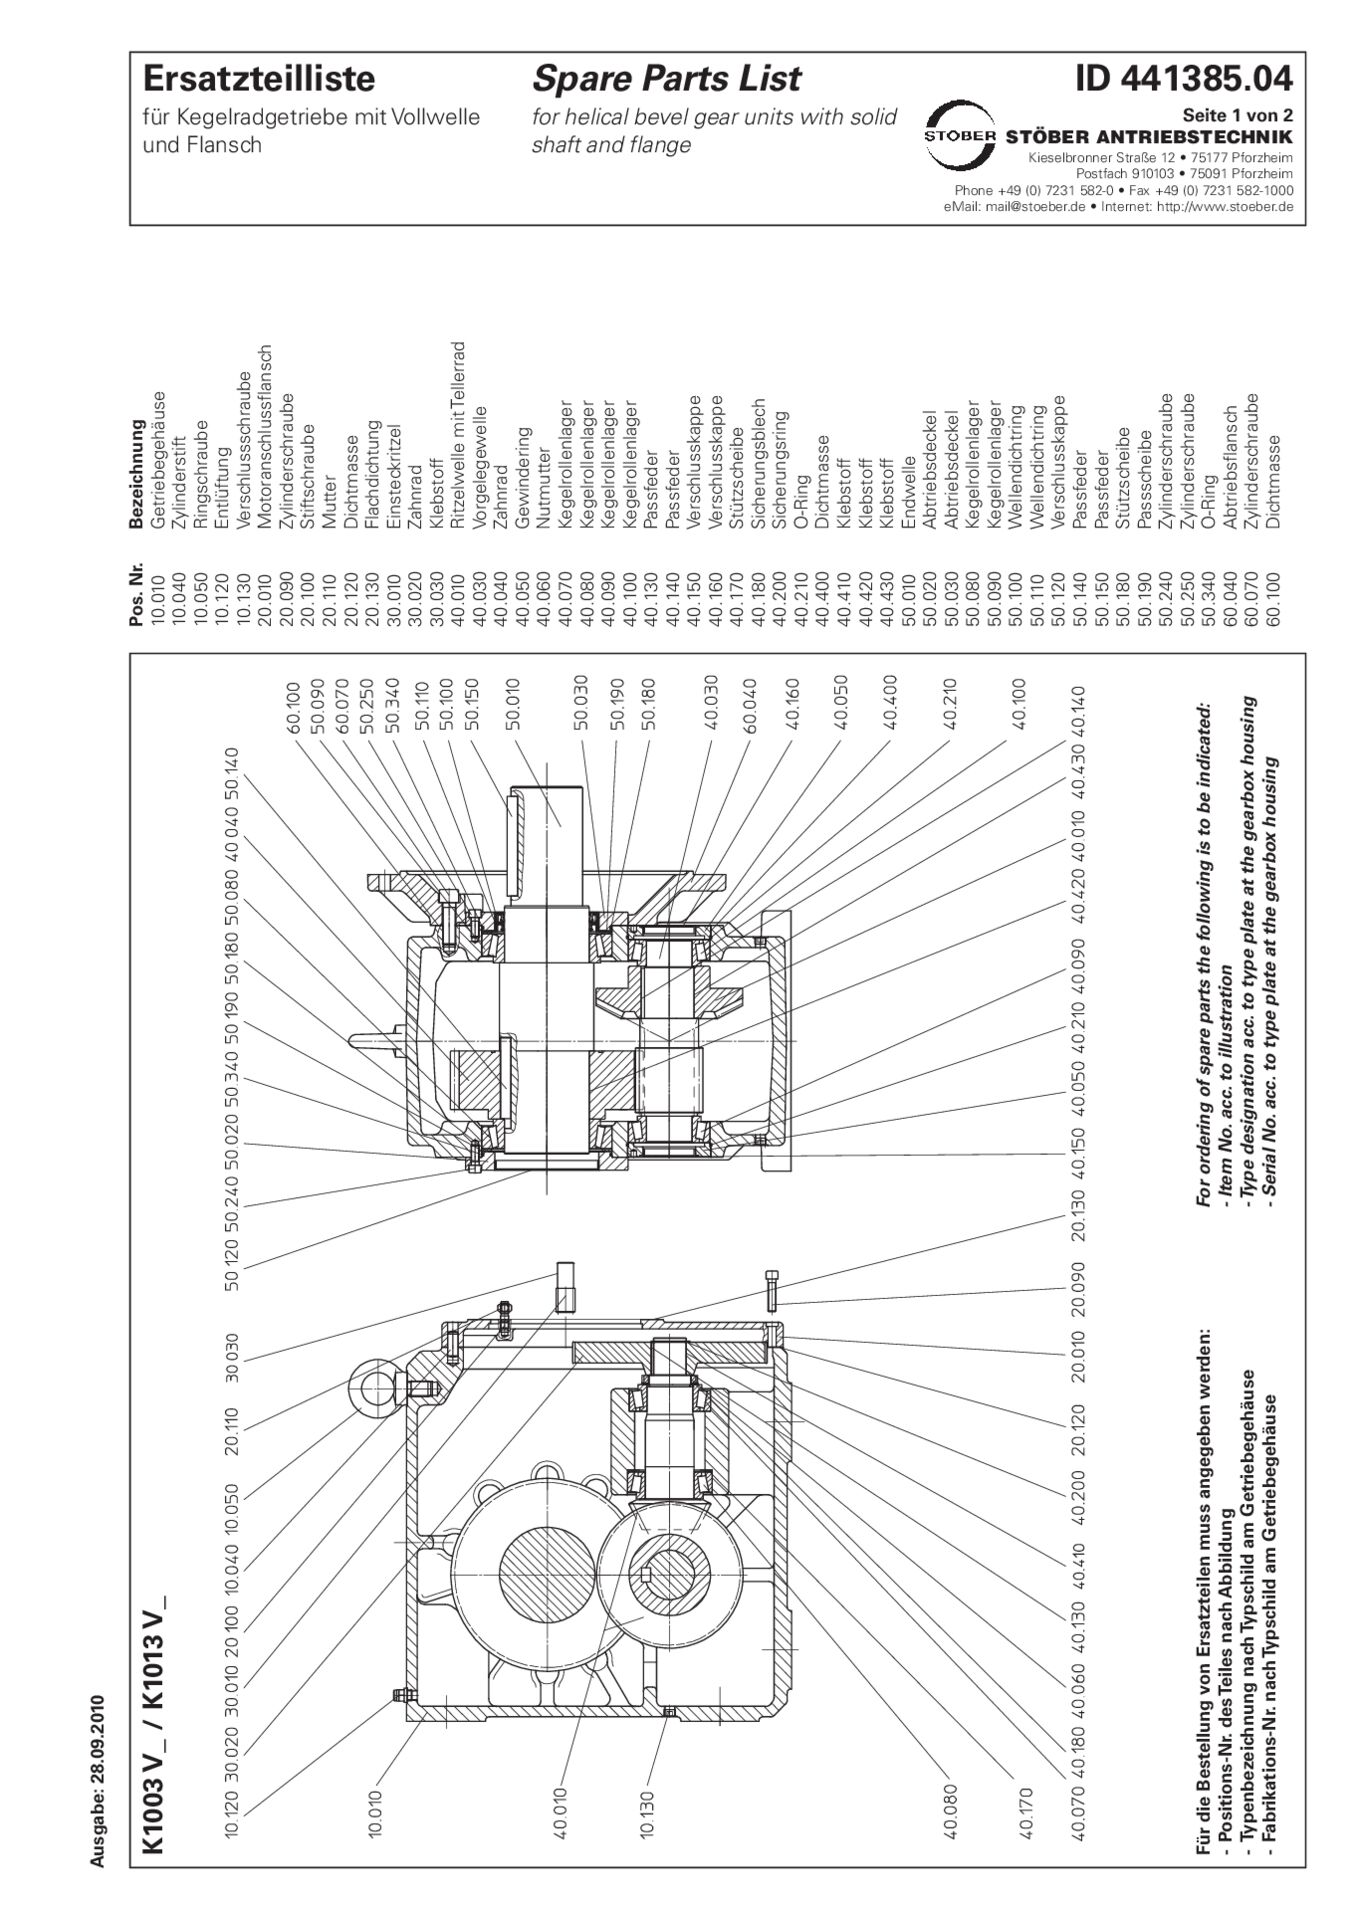 Replacement parts list helical bevel gear units K1003 K1013 VErsatzteilliste Kegelradgetriebe K1003 K1013 V